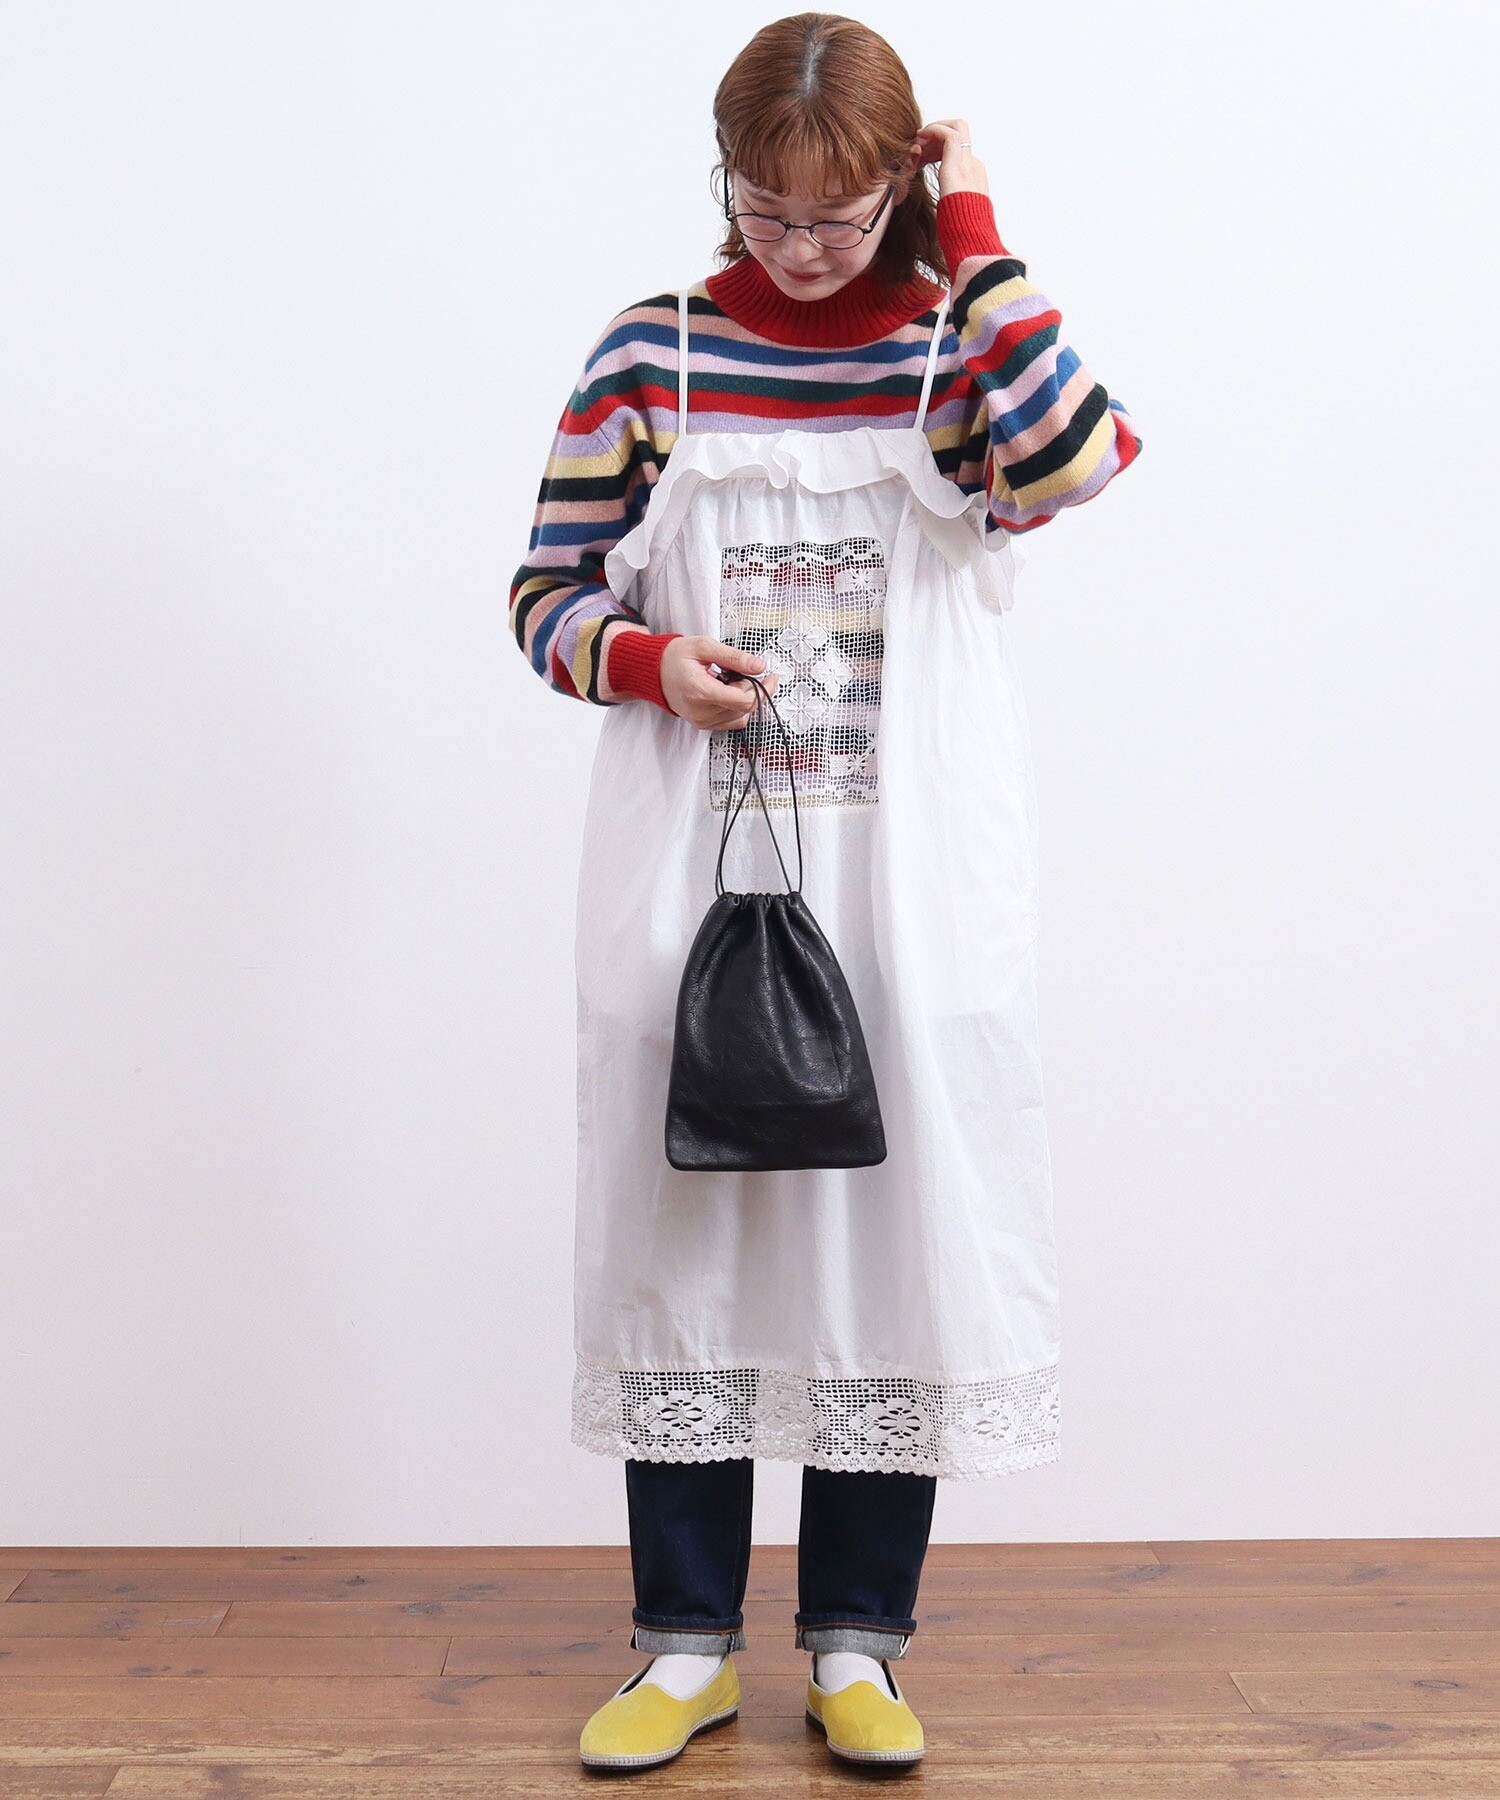 AMBIDEX Store ○Tuscany lace apron dress(F シロ): l'atelier du savon